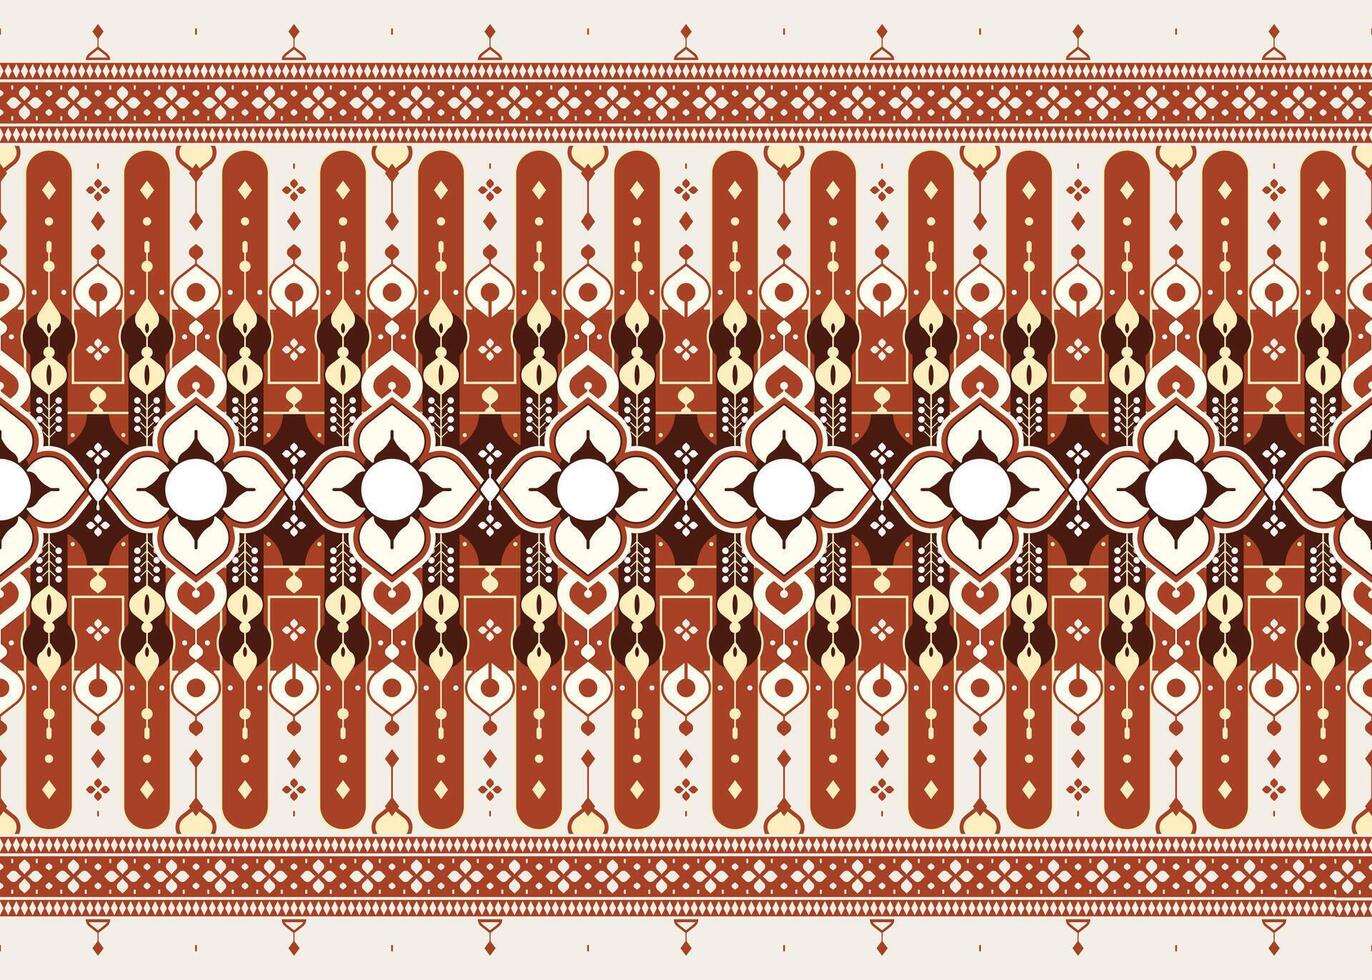 meetkundig en bloem etnisch kleding stof naadloos patroon voor kleding tapijt behang achtergrond omhulsel enz. vector